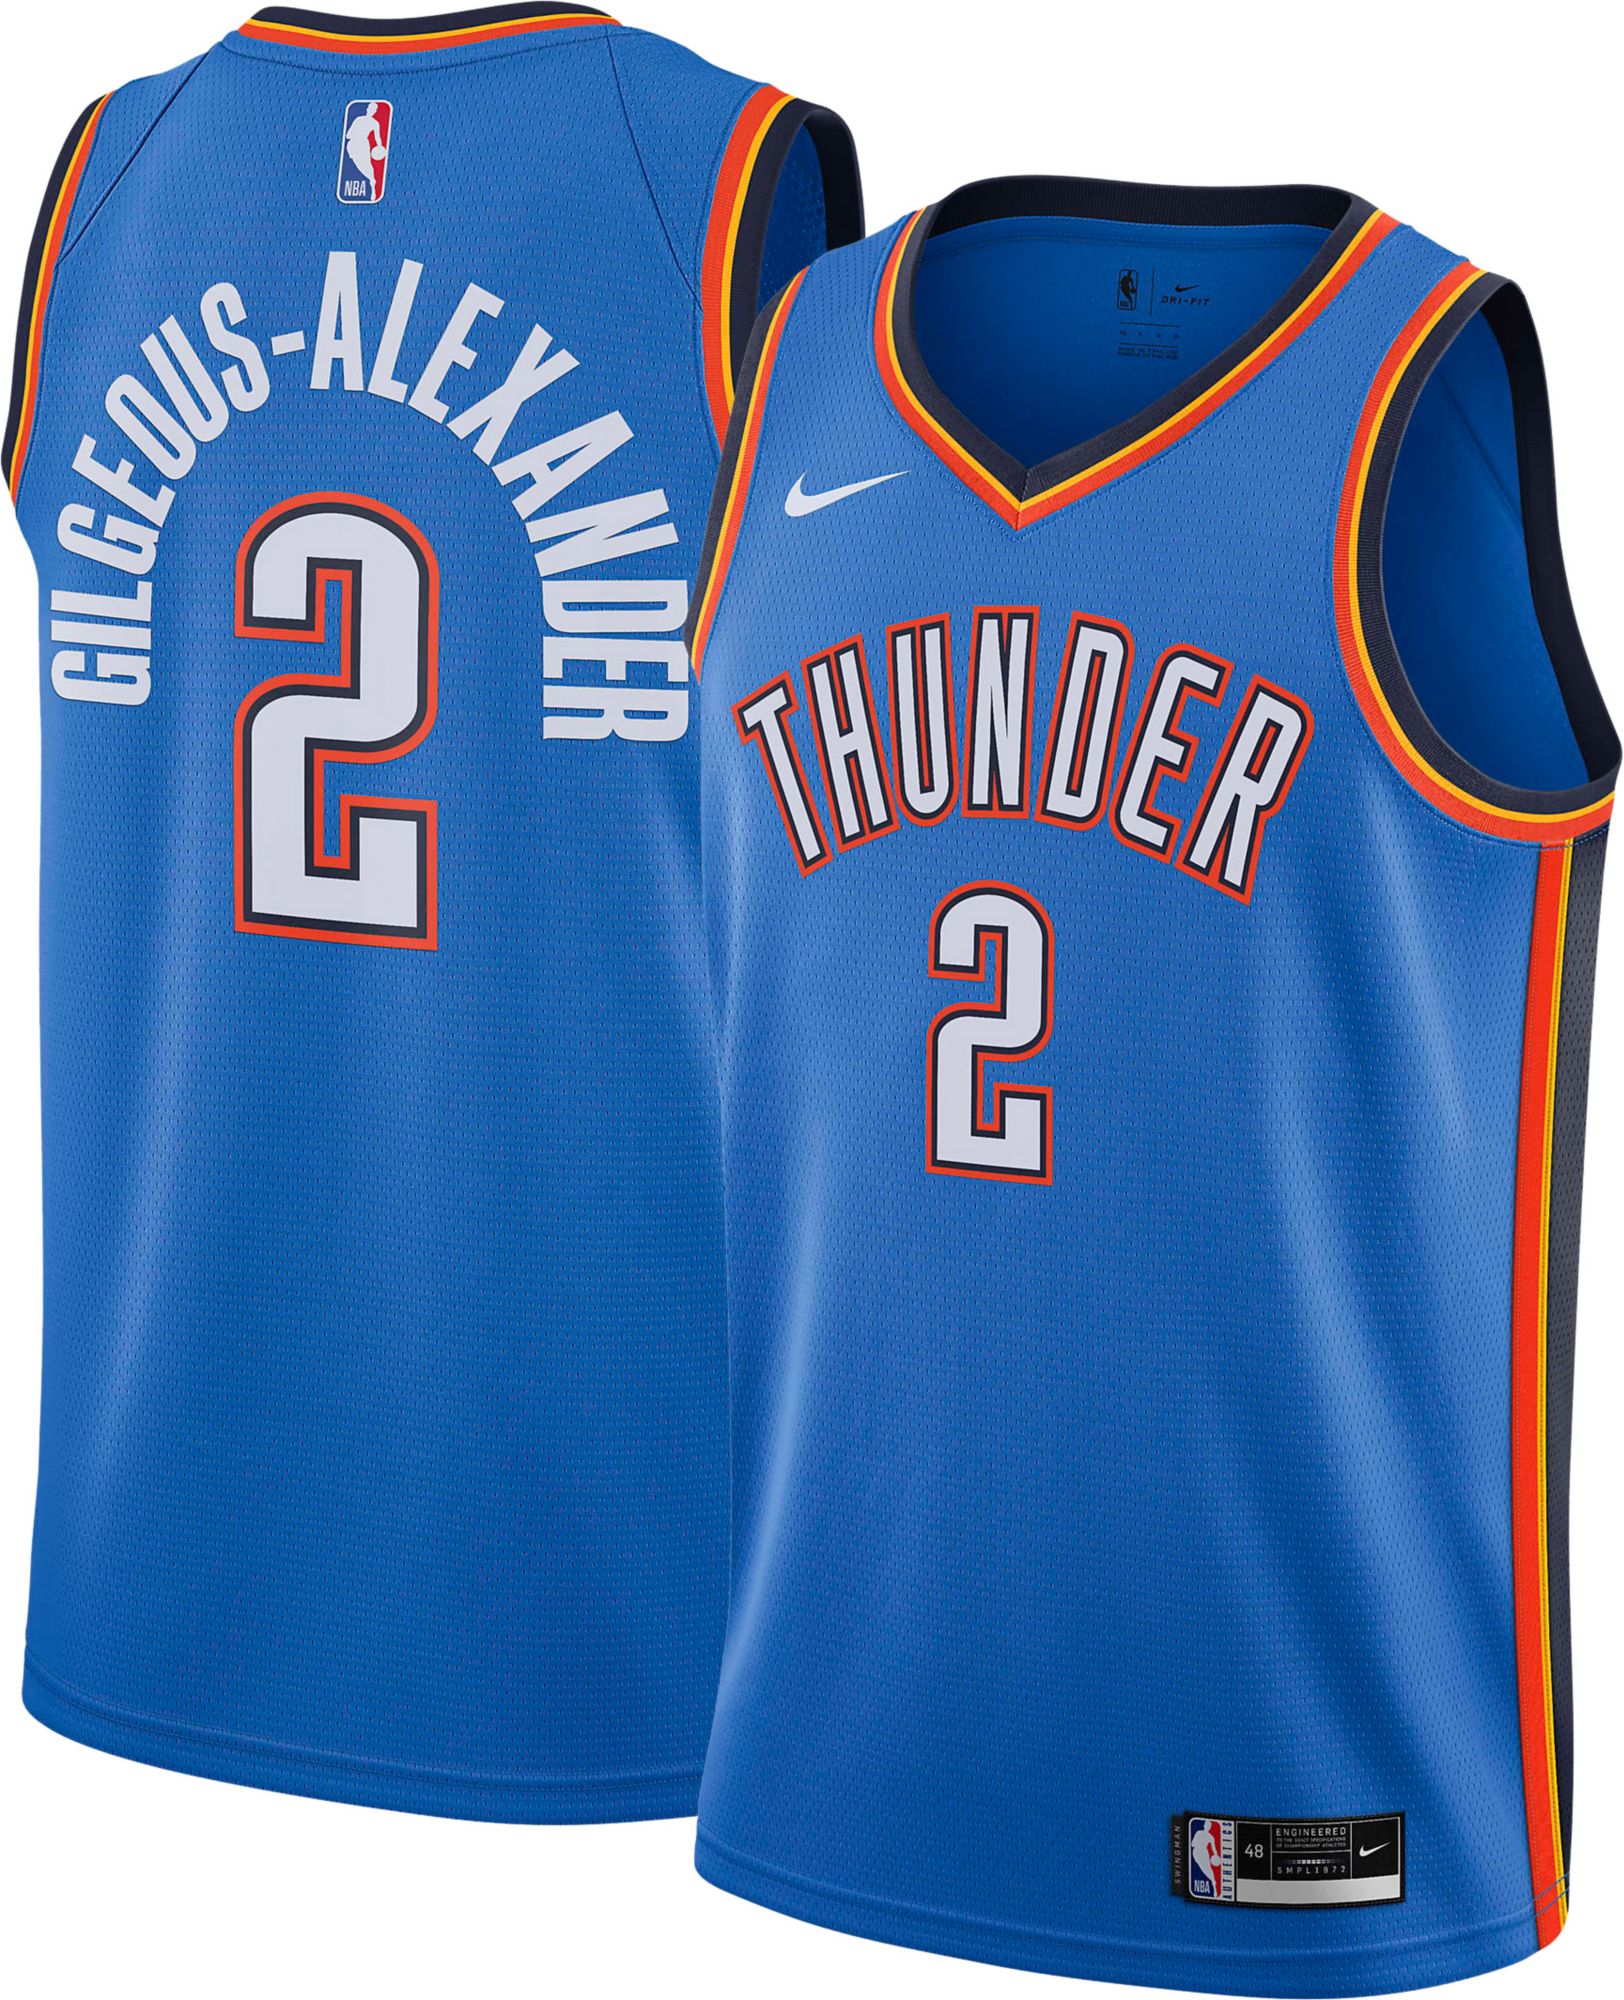 Oklahoma City Thunder Jerseys  Curbside Pickup Available at DICK'S